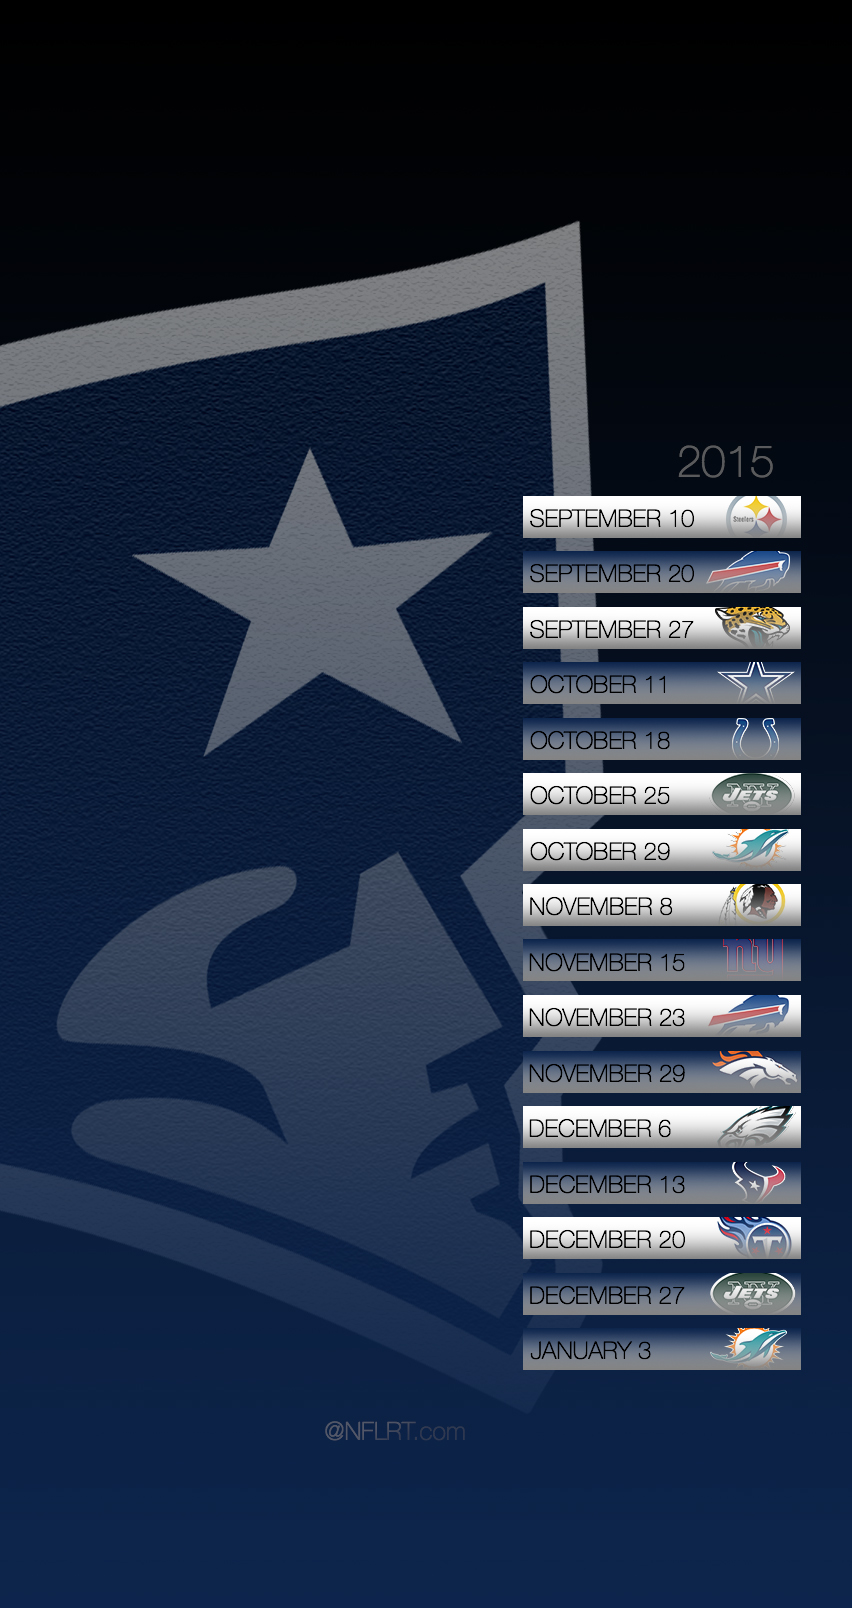 2015 NFL Schedule Wallpapers - @NFLRT